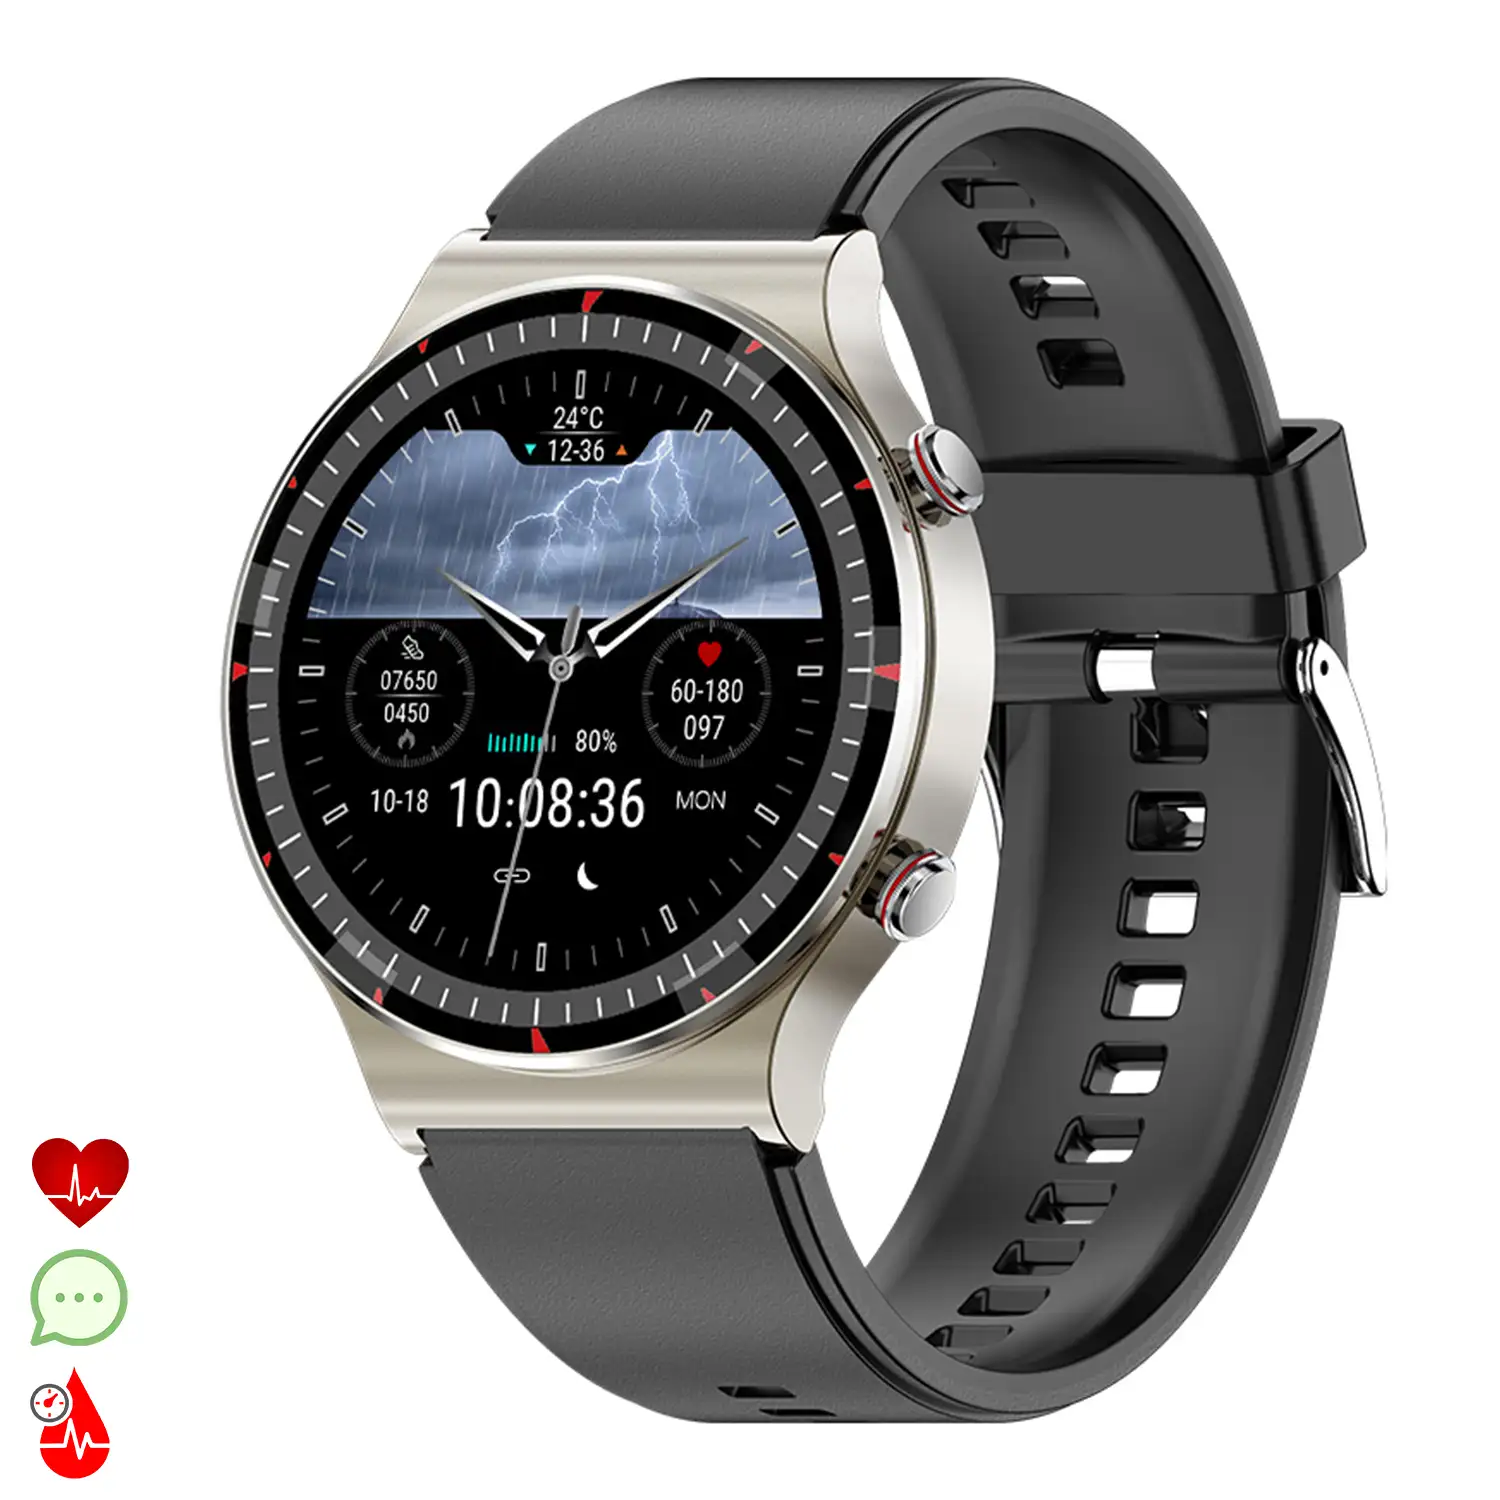 Smartwatch G08 con ECG de grado médico. Monitor de O2 en sangre, apnea del sueño. 10 modos deportivos.